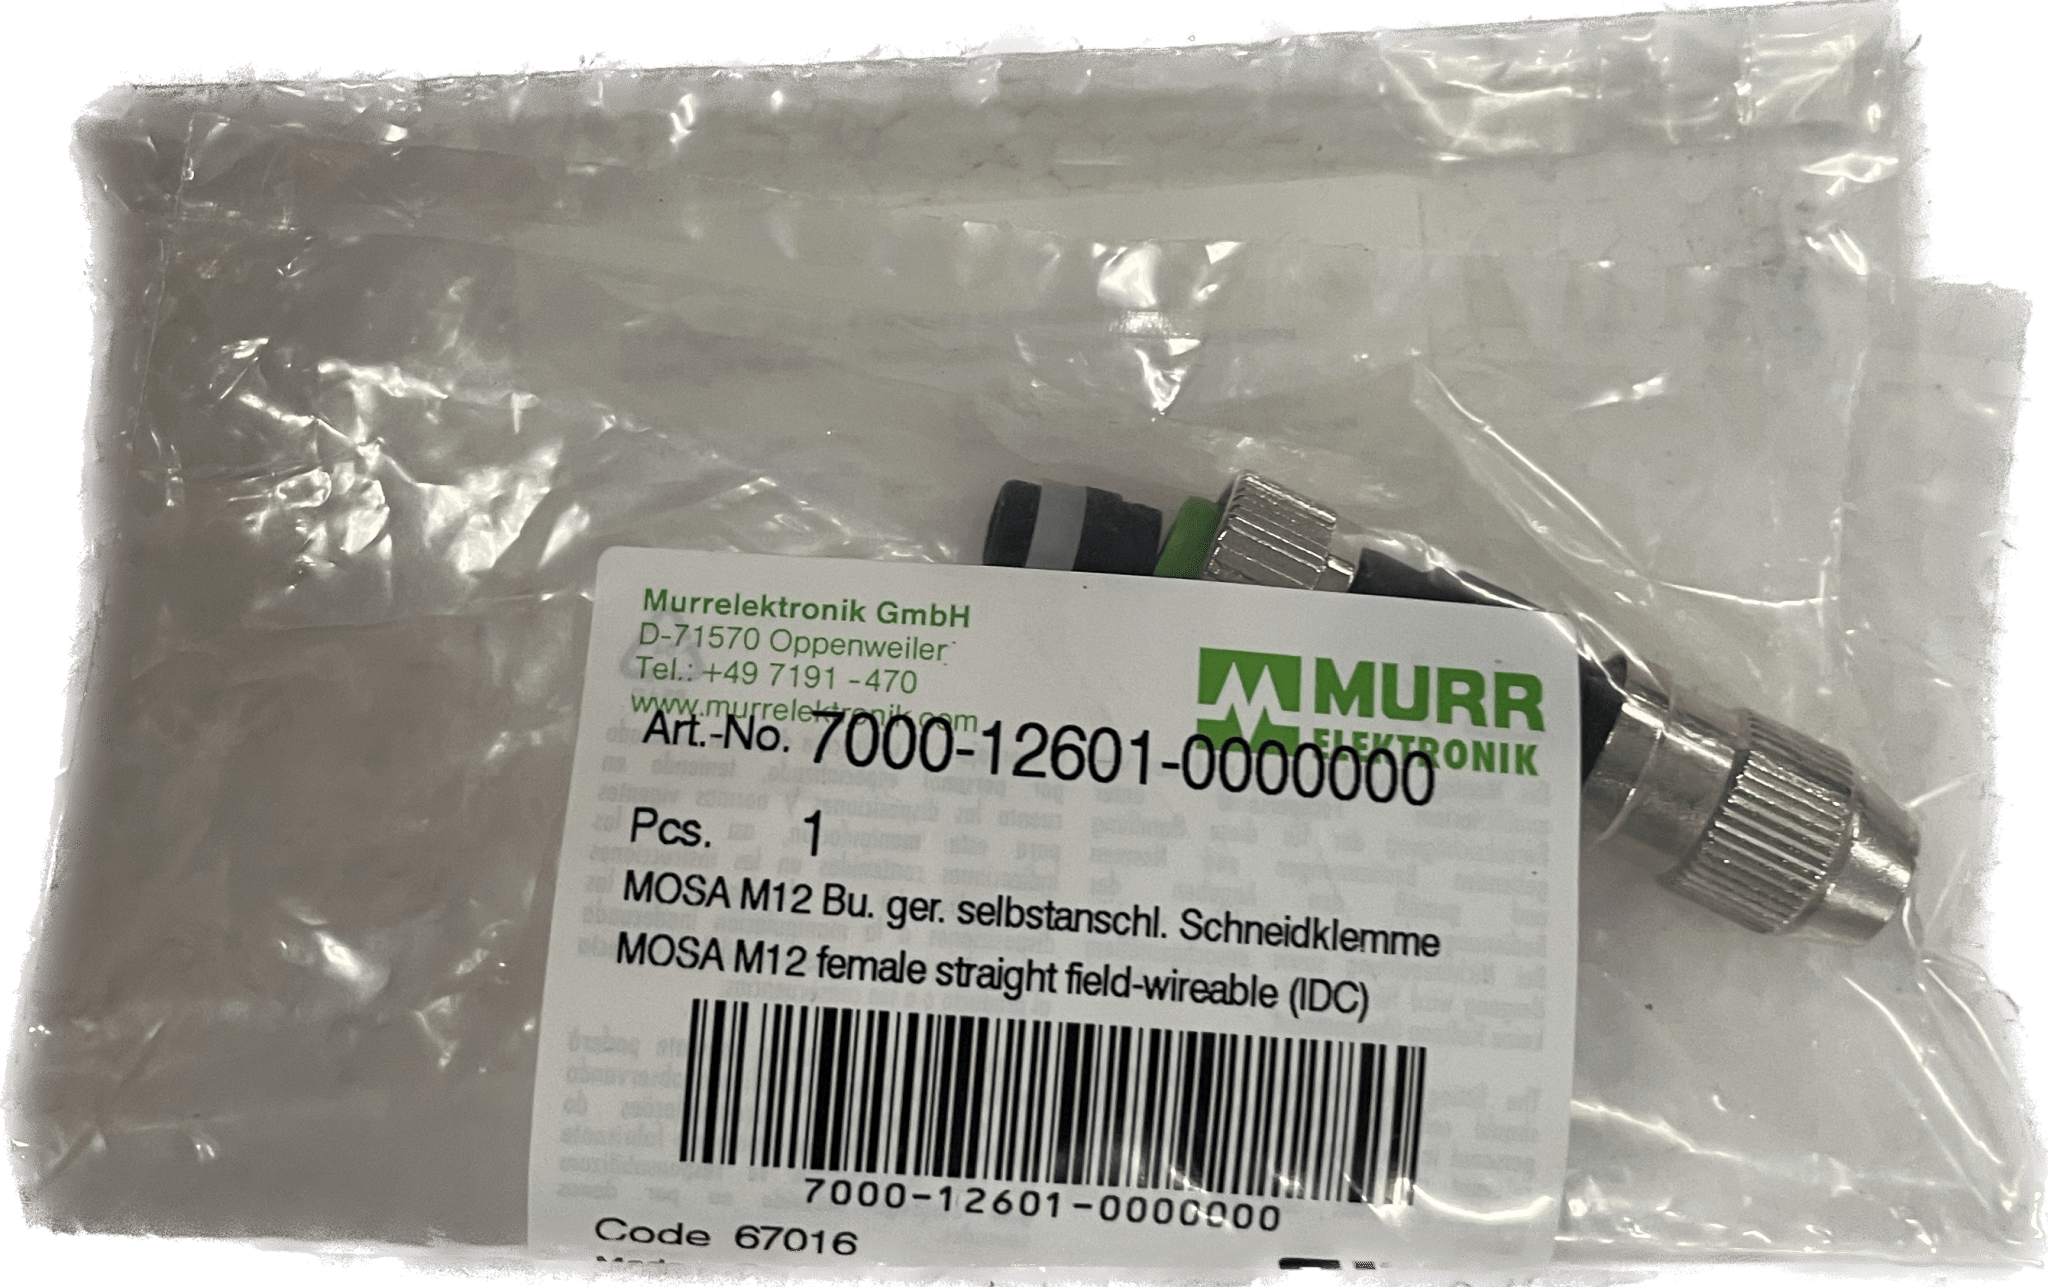 MURR-Elektronik 7000-12601-0000000 - #product_category# | Klenk Maschinenhandel